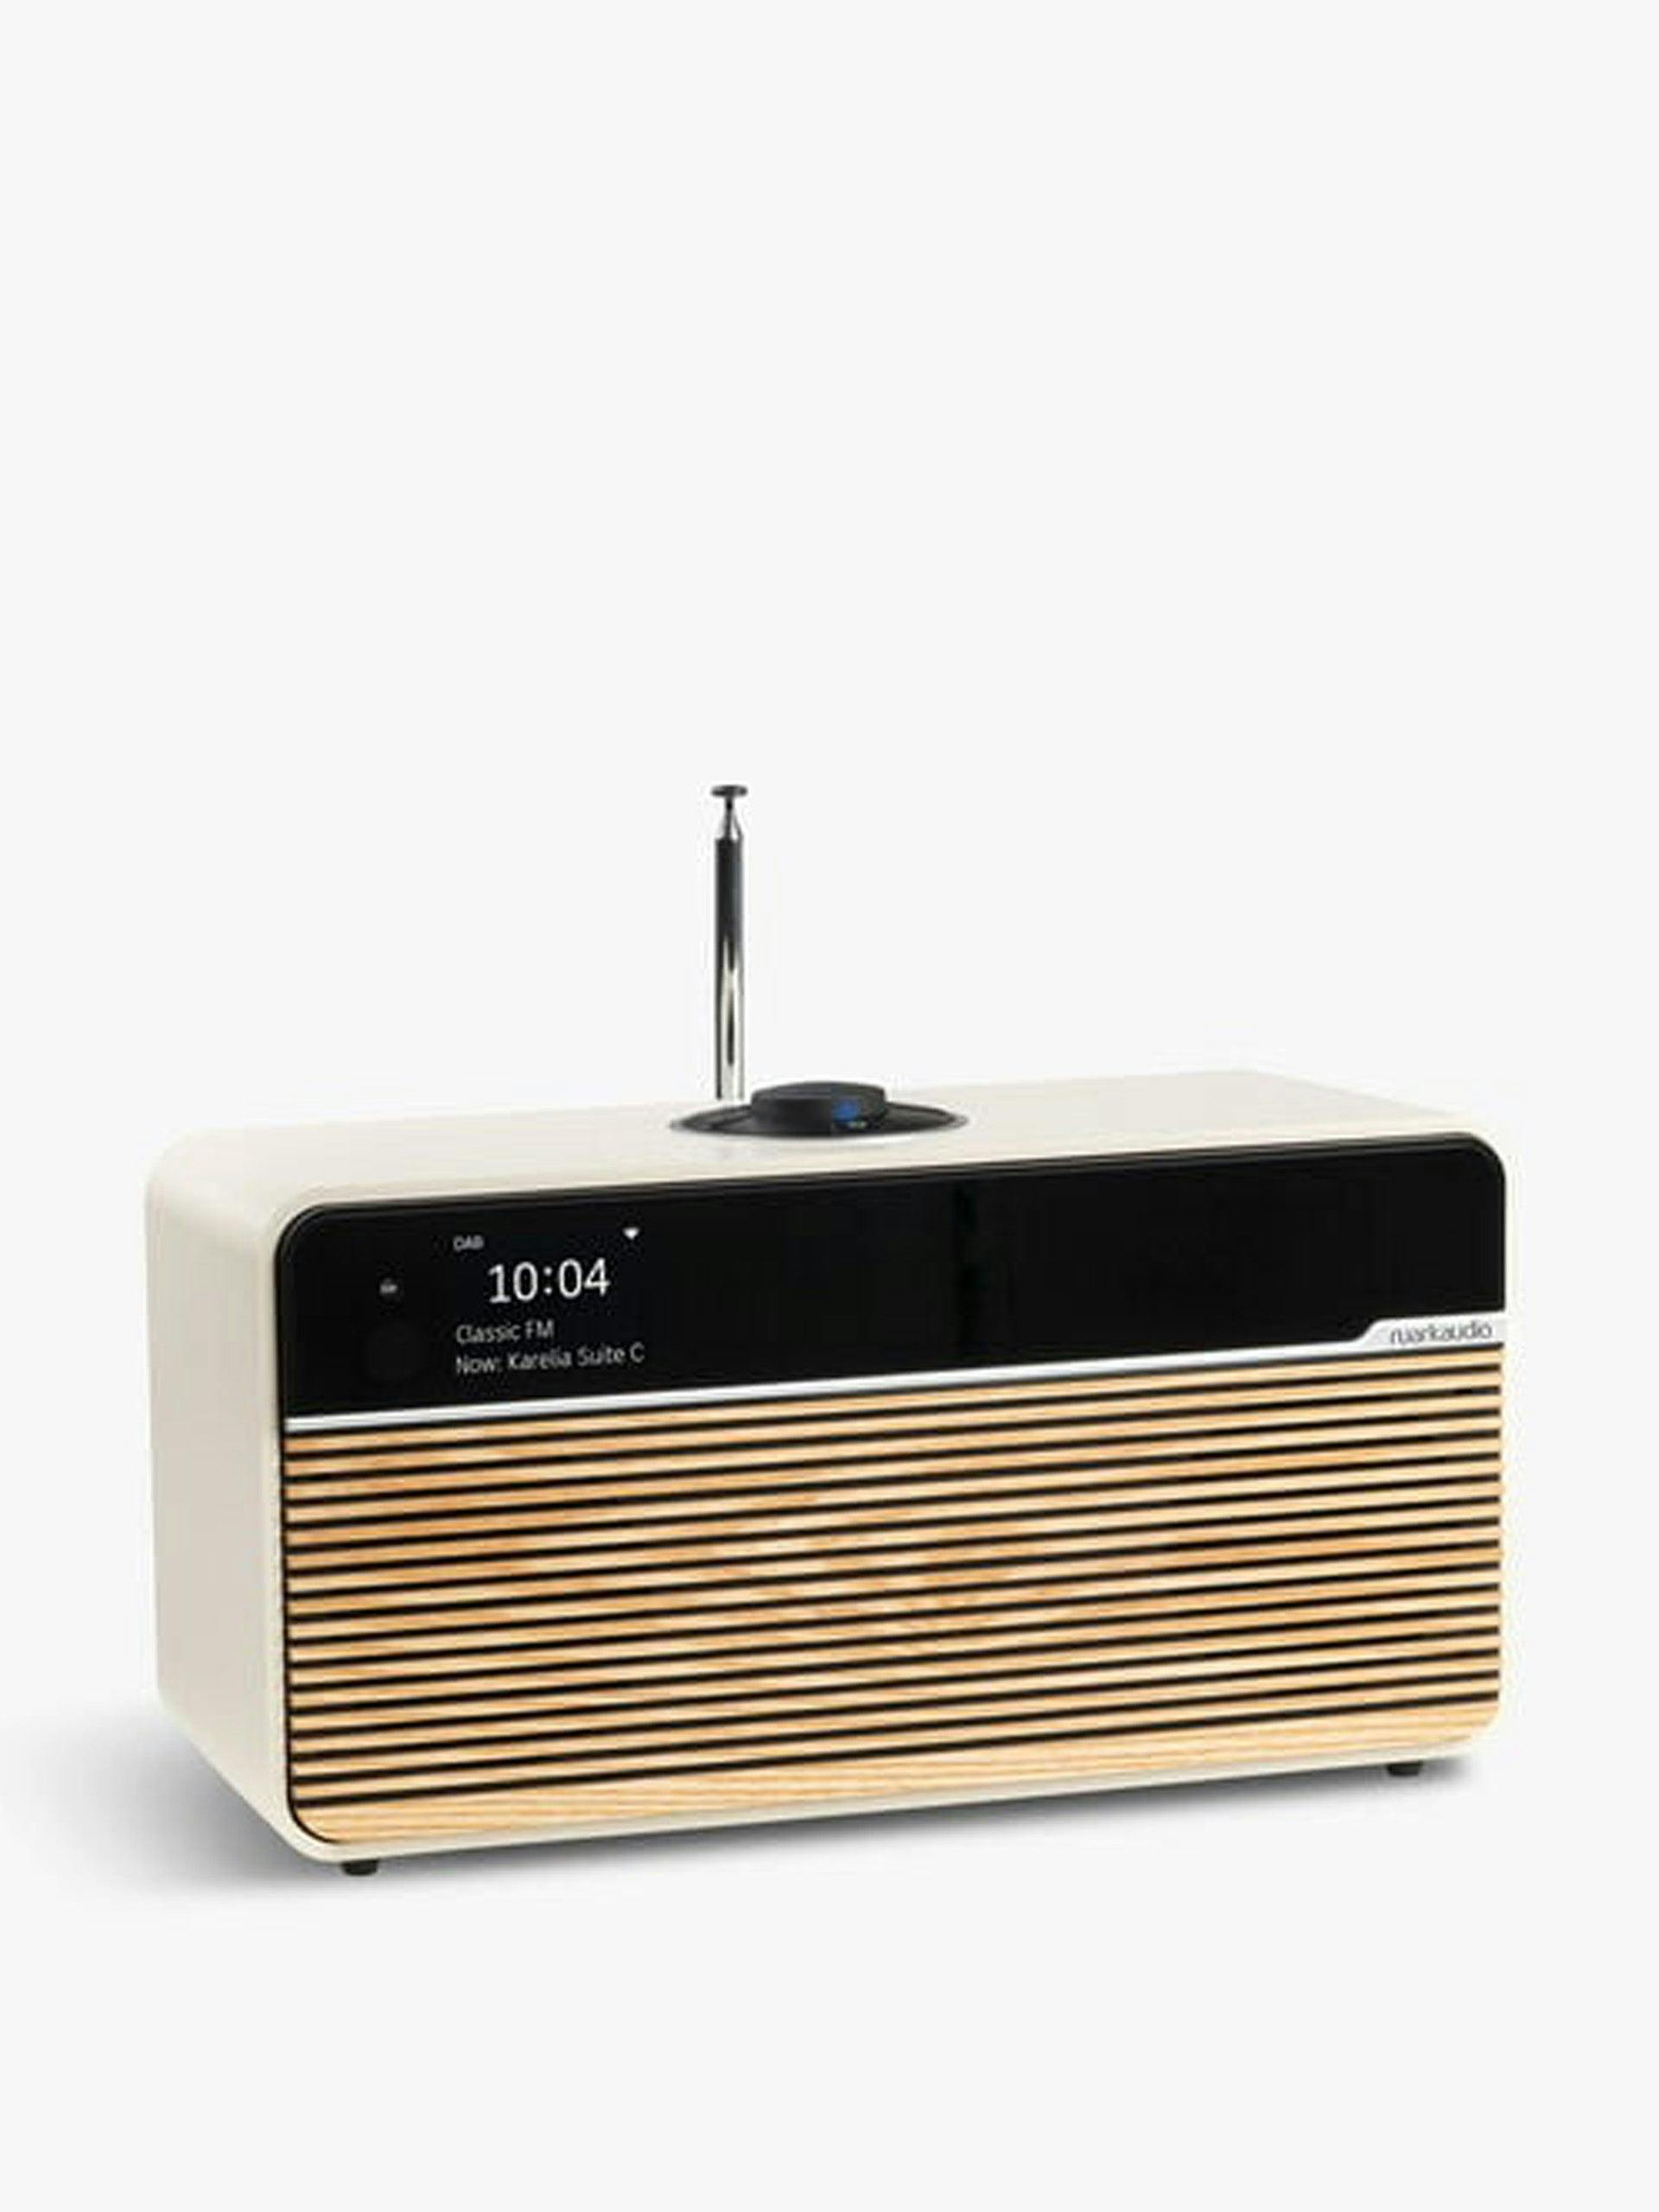 R2 MK4 DAB radio